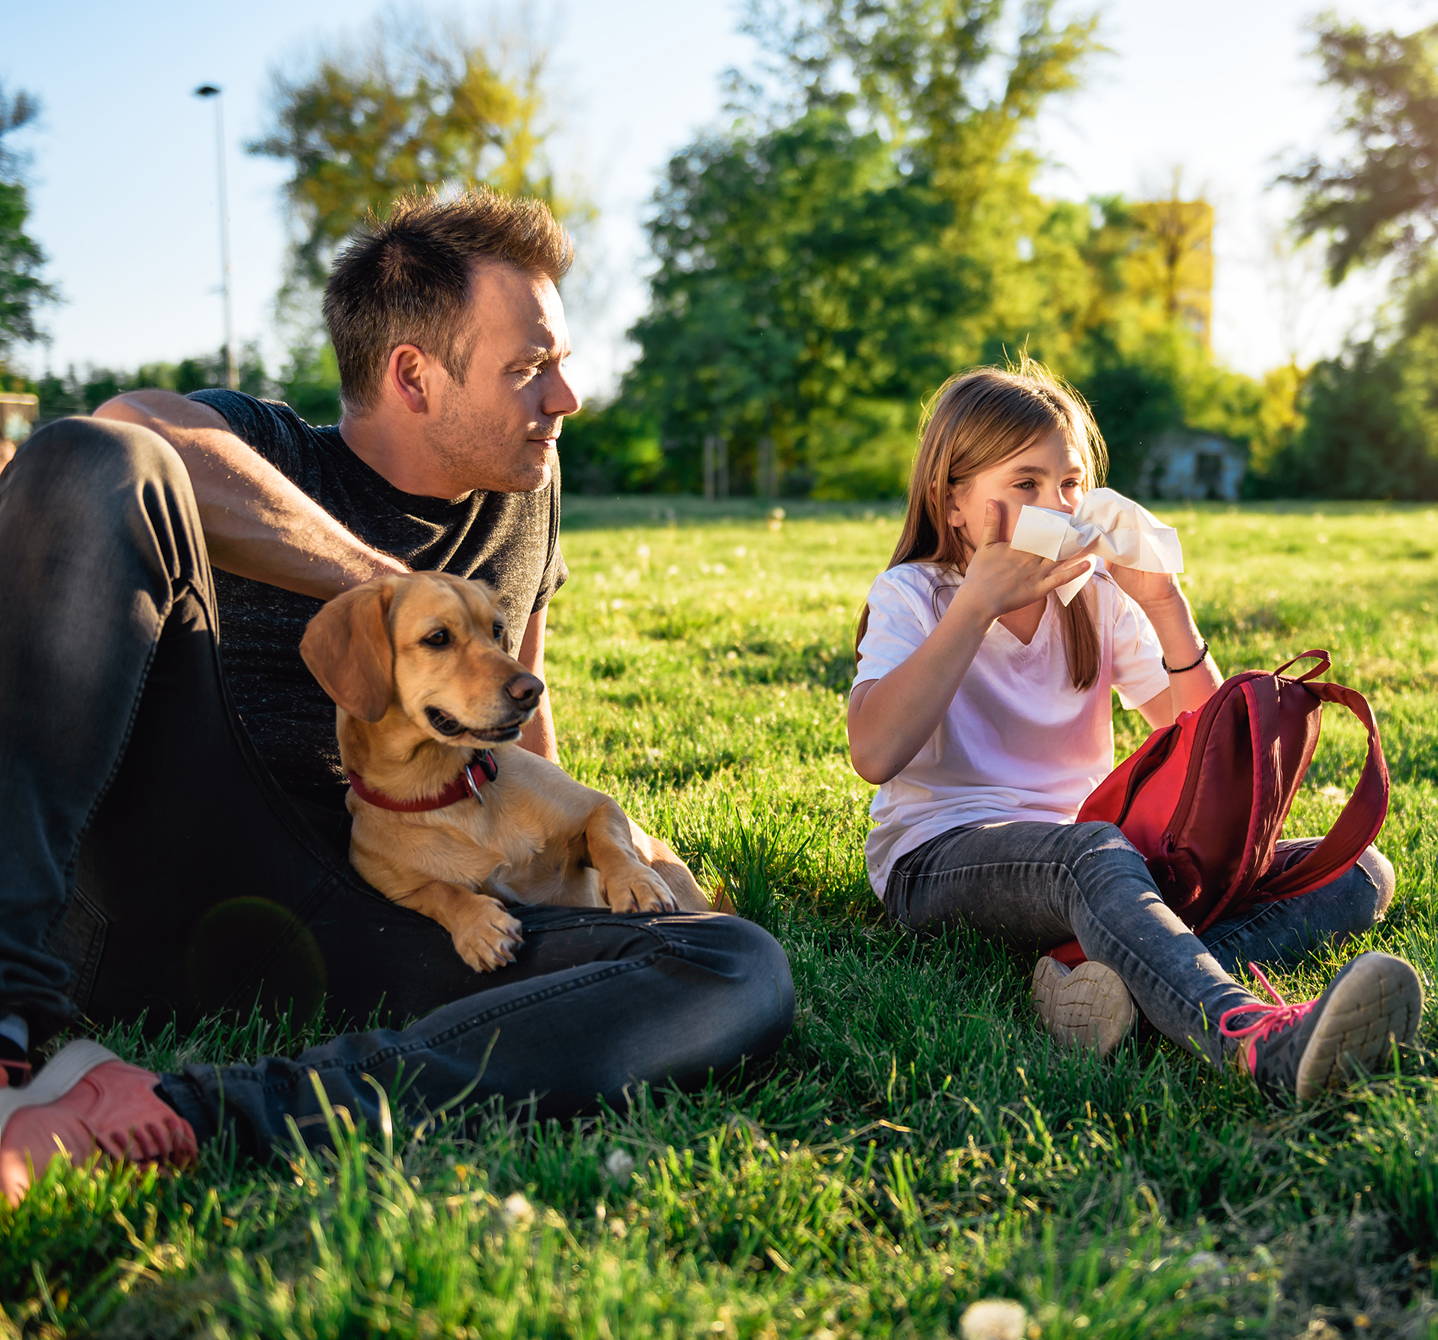 Une jeune fille allergique au pollen, assise dans l’herbe avec son père et son chien par une journée d’été, se mouche le nez.